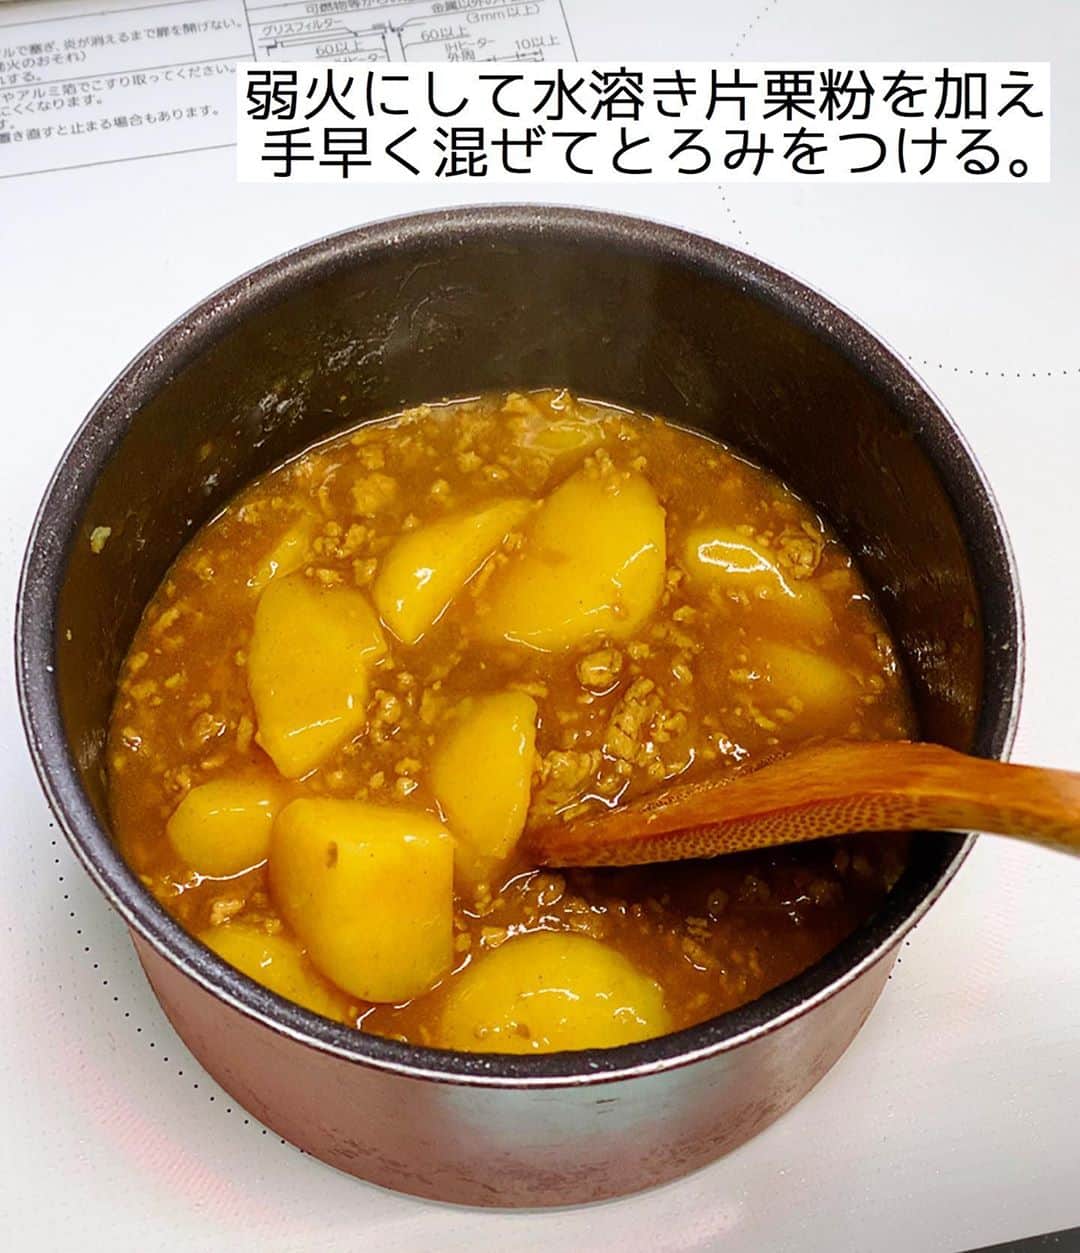 Mizuki【料理ブロガー・簡単レシピ】さんのインスタグラム写真 - (Mizuki【料理ブロガー・簡単レシピ】Instagram)「・﻿ 【#レシピ 】ーーーーーーーーーーーーー﻿ ♡じゃがいものカレーそぼろあんかけ♡﻿ (2品献立提案あり)﻿ ーーーーーーーーーーーーーーーーーーー﻿ ﻿ ﻿ ﻿ おはようございます(*^^*)﻿ ﻿ 今日ご紹介させていただくのは﻿ \じゃがいものカレーそぼろあんかけ/﻿ ホックホクのじゃがいもと﻿ 甘辛カレーあんが好相性の﻿ ごはんがすすむおかずです♡﻿ しかもコスパ抜群で﻿ しっかり食べ応えもありますよ〜♩﻿ ﻿ 作り方は超簡単(*´艸`)﻿ さっと炒めて煮るだけ！！﻿ ﻿ お鍋ひとつでできるので﻿ よかったらお試し下さいね(*^^*)﻿ ﻿ ﻿ ﻿ ＿＿＿＿＿＿＿＿＿＿＿＿＿＿＿＿＿＿＿＿﻿ 【2人分】﻿ じゃがいも...2個(300g)﻿ 豚ひき肉...100g﻿ ごま油...小1﻿ カレー粉...小1﻿ ●水...250ml﻿ ●酒・砂糖...各大1﻿ ●醤油...大1.5﻿ 片栗粉...小2﻿ (あれば)万能ねぎ...適量﻿ ﻿ 1.じゃがいもは3cm大に切る。片栗粉は水大1(分量外)で溶き、水溶き片栗粉を作っておく。﻿ 2.小鍋にごま油を中火で熱してひき肉を炒める。色が変わったらじゃがいもとカレー粉を加えて更に1分炒める。﻿ 3.●を加えて混ぜ、煮立ったらフタをずらして乗せ、弱めの中火で10分煮る。﻿ 4.じゃがいもが柔らかくなったら弱火にし、水溶き片栗粉を加えてとろみをつける。器に盛り、斜め切りにしたねぎを乗せる。﻿ ￣￣￣￣￣￣￣￣￣￣￣￣￣￣￣￣￣￣￣￣﻿ ﻿ ﻿ ﻿ 《ポイント》﻿ ♦︎水溶き片栗粉を加えたらすぐにとろみがつくので手早く混ぜて下さい♩﻿ ♦︎じゃがいもの種類によっては煮込み時間を調節して下さい♩今回は男爵いもを使用しています♩﻿ ﻿ ﻿ ﻿ ﻿ ﻿ ＿＿＿＿＿＿＿＿＿＿＿＿＿＿＿﻿ 🥣🥣🥣2品献立提案🥣🥣🥣﻿ ￣￣￣￣￣￣￣￣￣￣￣￣￣￣￣﻿ 【合間に作れるおすすめ副菜】﻿ >ブロッコリーと卵のおかかマヨ和え(P.100)﻿ >エリンギとベーコンのコンソメバター(P.95)﻿ (#Mizukiの2品献立 より)﻿ ﻿ 【献立の段取り】﻿ メインを火にかけてから、副菜にとりかかる🥢﻿ ﻿ ﻿ ﻿ ﻿ ﻿ ﻿ 【⭐️発売中⭐️】﻿ _____________________________________﻿ \15分でいただきます/﻿ 📕#Mizukiの2品献立 📕﻿ (9月24日発売・マガジンハウス)﻿ ￣￣￣￣￣￣￣￣￣￣￣￣￣￣￣￣￣﻿ ﻿ 忙しい私たちには﻿ 2品くらいがちょうどいい！﻿ 『しんどくない献立、考えました』﻿ ￣￣￣￣￣￣￣￣￣￣￣￣￣￣￣￣﻿ ﻿ ーーーーーPART.1 ーーーーー﻿ 【Mizukiのお墨つき！２品献立ベスト10】﻿ 約15分でできる10献立をご紹介！﻿ メインは全部フライパン、副菜はレンチンor混ぜるだけ♡﻿ ﻿ ーーーーーPART.2 ーーーーー﻿ 【フライパンひとつ！今夜のメインおかず】﻿ 献立の主役になる肉や魚のおかず50品！﻿ Part3の副菜と組み合わせれば﻿ 献立のバリエーションが広がりますよ♩﻿ ﻿ ーーーーー PART.3 ーーーーー﻿ 【合間に作れる！ 野菜別かんたん副菜】﻿ レンチンor和えるだけの副菜レシピを﻿ 素材別にたっぷり収録♩﻿ ﻿ ーーーーー番外編ーーーーー﻿ 【ひとつで満足！ご飯＆麺】﻿ 【具だくさん！おかずスープ】﻿ 【オーブンいらずのおやつレシピ】﻿ ￣￣￣￣￣￣￣￣￣￣￣￣￣￣￣￣￣￣﻿ (ハイライトにリンク🔗あります💗)﻿ ﻿ ﻿ ﻿ ﻿ ＿＿＿＿＿＿＿＿＿＿＿＿＿＿＿＿＿＿﻿ 🔔テレビ出演のお知らせ🔔﻿ 10月5日より2週間(月〜木)﻿ 【NHK Eテレ #まる得マガジン 】に﻿ 講師として出演させていただきます☺️﻿ 俳優の武田航平さん﻿ (@kouhei_takeda.official )と一緒に﻿ 絶品おやつから意外なランチまで﻿ たくさん作らせていただきますよ♩﻿ ￣￣￣￣￣￣￣￣￣￣￣￣￣￣￣￣￣￣﻿ ﻿ ﻿ ﻿ ﻿ レシピを作って下さった際や﻿ レシピ本についてのご投稿には﻿ タグ付け( @mizuki_31cafe )して﻿ お知らせいただけると嬉しいです😊💕﻿ ﻿ ﻿ ﻿ ﻿ ﻿ #ひき肉#じゃがいも#あんかけ#カレー#Mizuki#簡単レシピ#時短レシピ#節約レシピ#料理#フーディーテーブル#マカロニメイト#おうちごはん#デリスタグラマー#料理好きな人と繋がりたい#食べ物#料理記録#おうちごはんlover#写真好きな人と繋がりたい#foodpic#cooking#recipe#lin_stagrammer#foodporn#yummy#f52grams#じゃがいものカレーそぼろあんかけm」9月30日 7時17分 - mizuki_31cafe